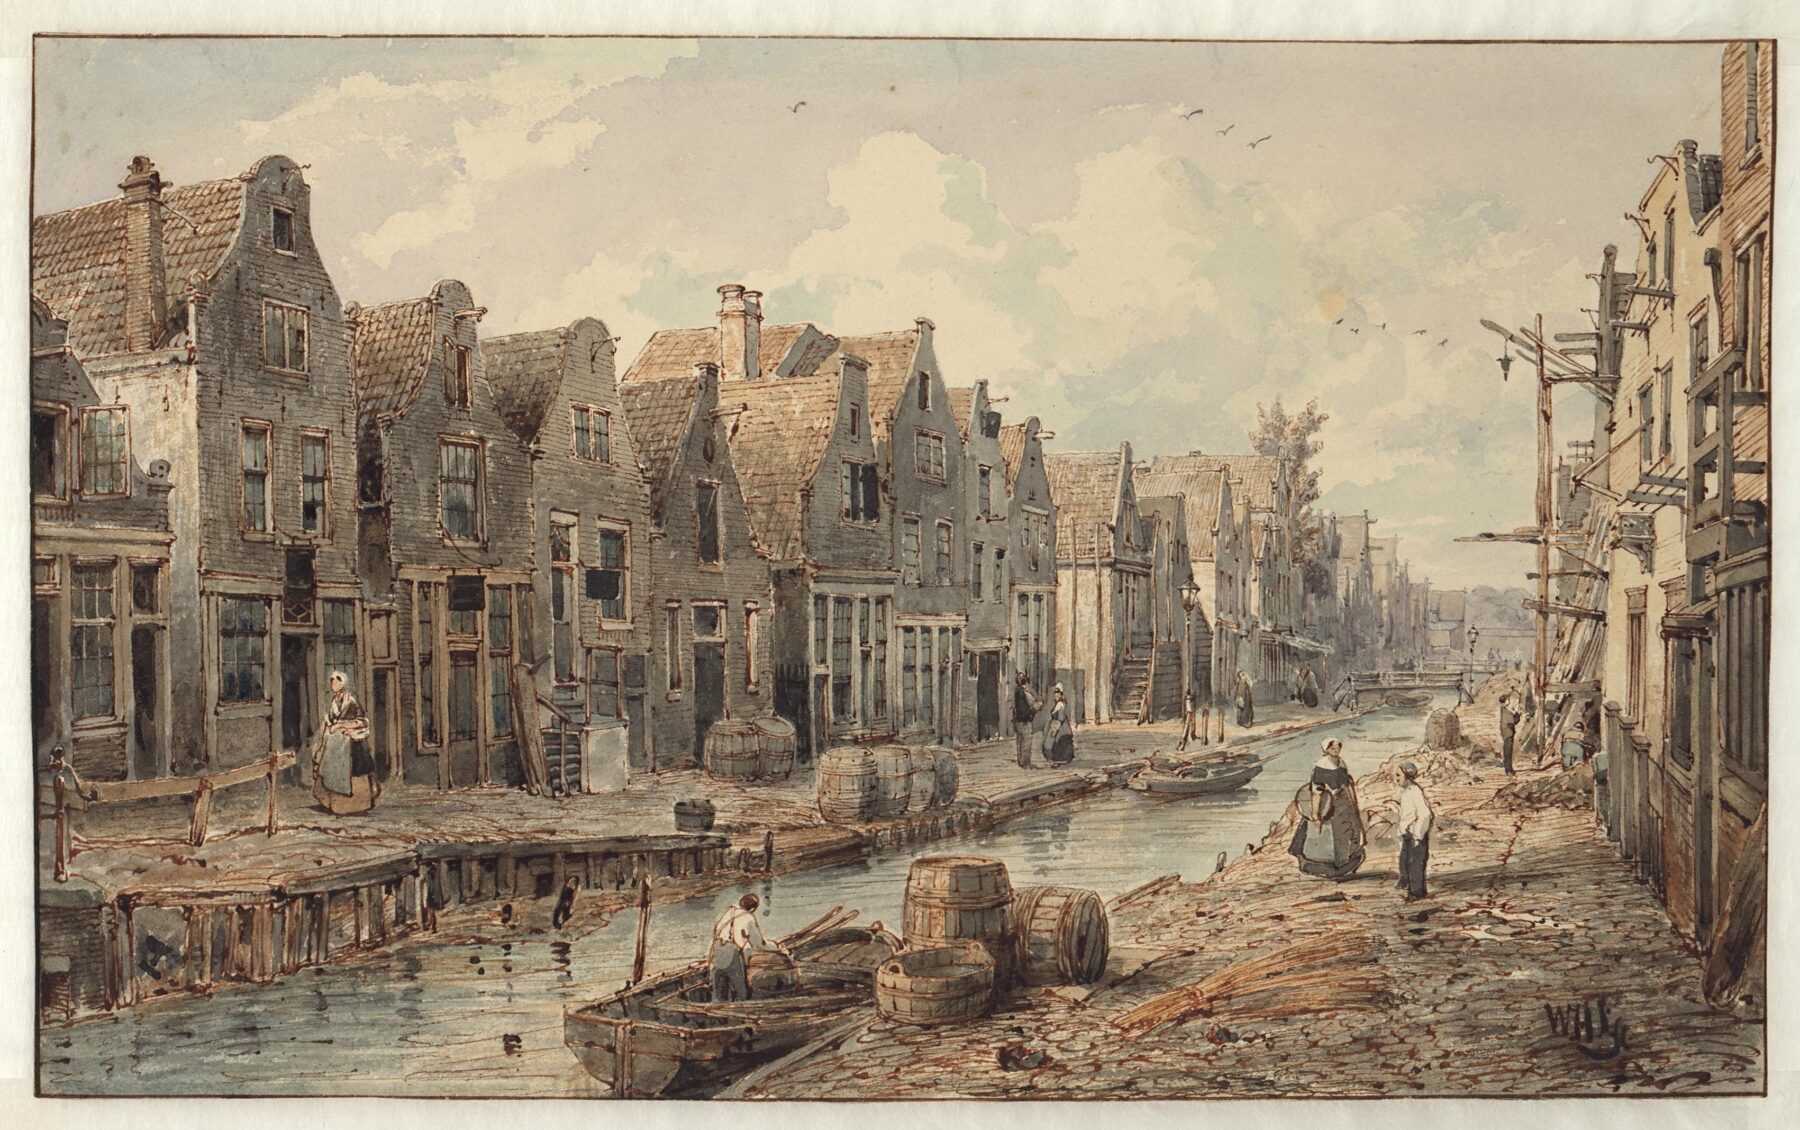 Schilderij van de Goudsbloemgracht, de huidige Willemsstraat, rond 1850. In 1854 werd de gracht gedempt